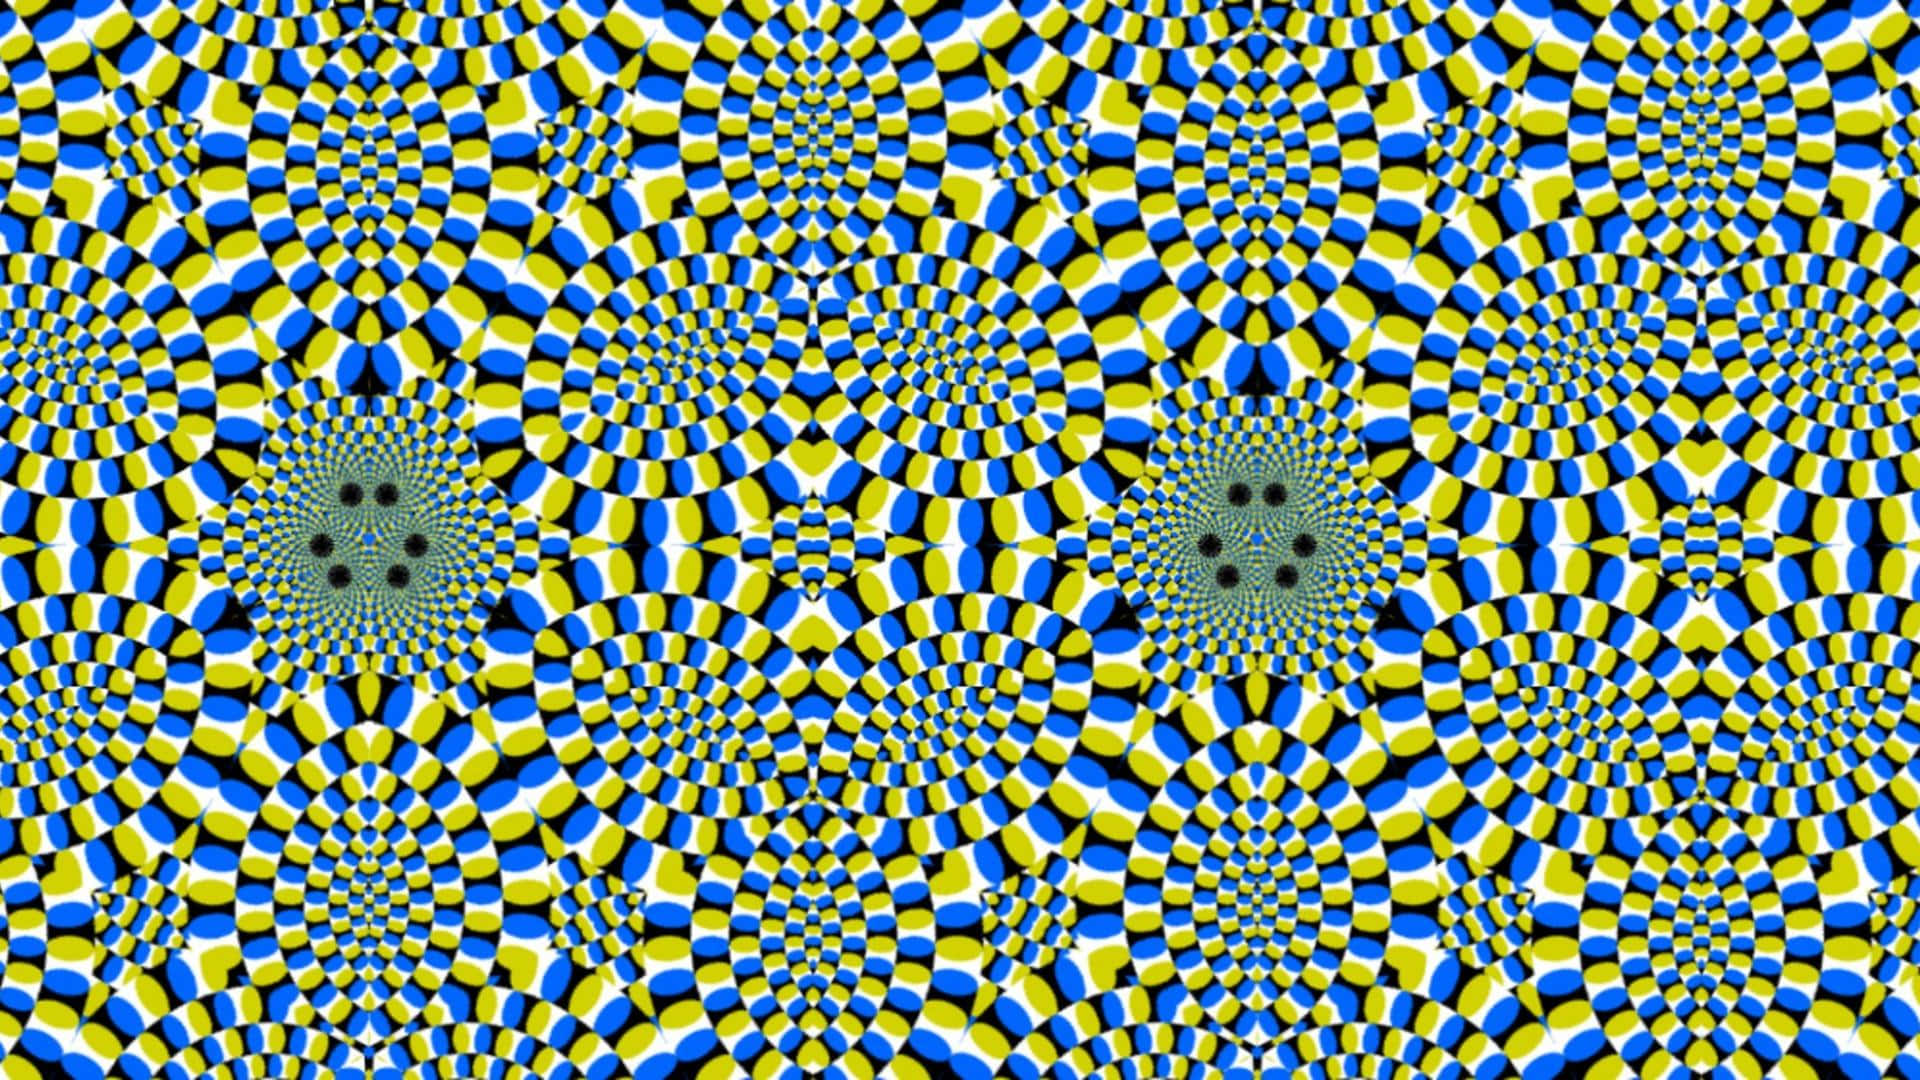 Seje Optiske Illusioner 1920 X 1080 Wallpaper